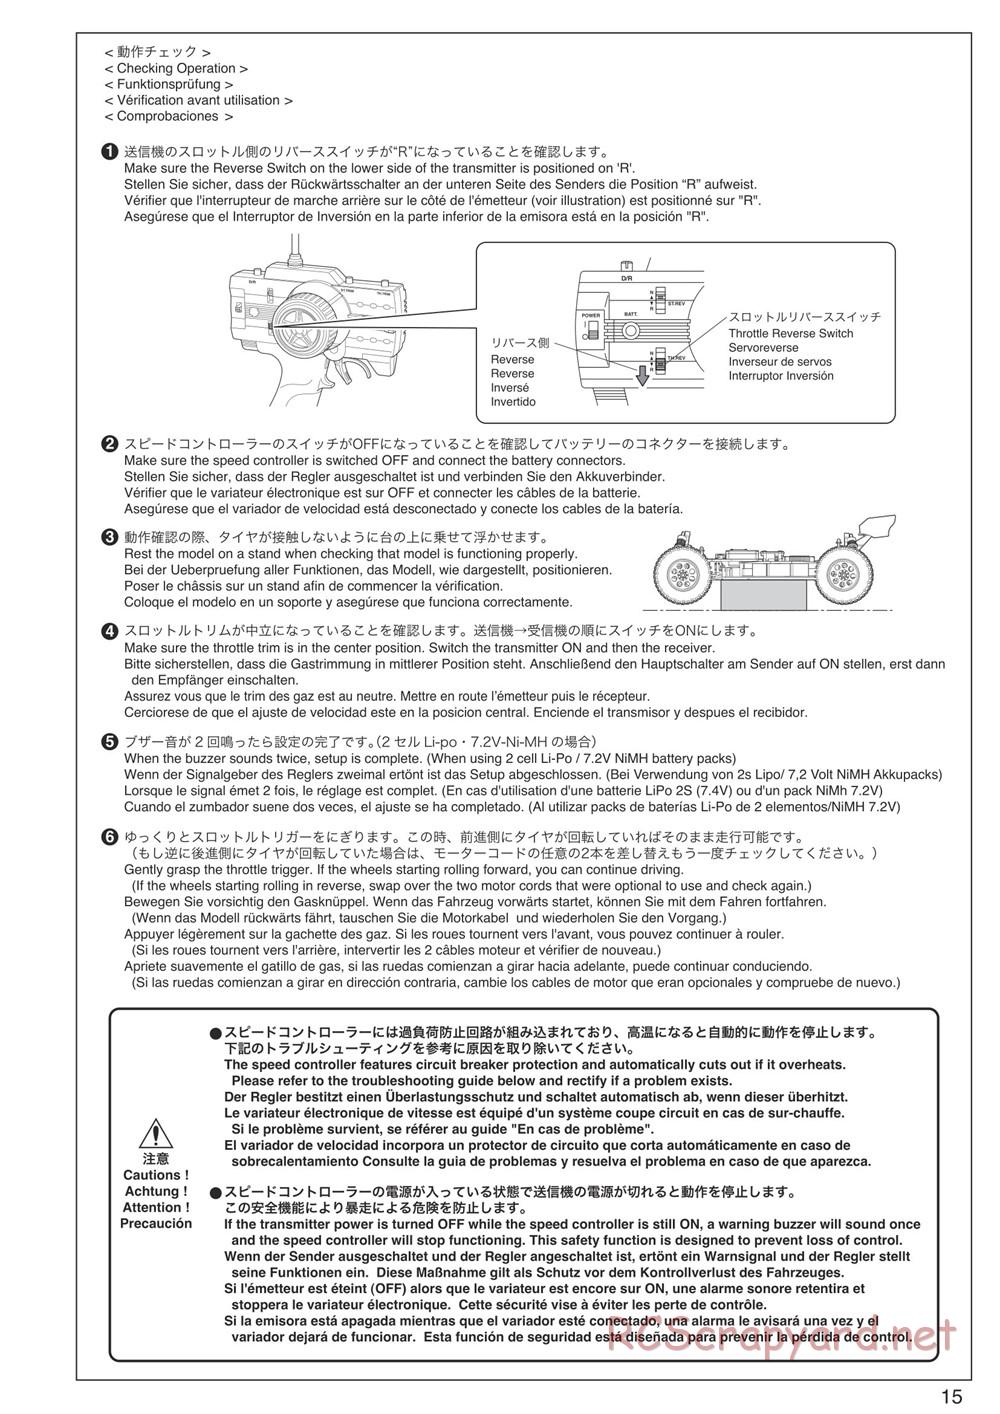 Kyosho - DBX-VE - Manual - Page 15